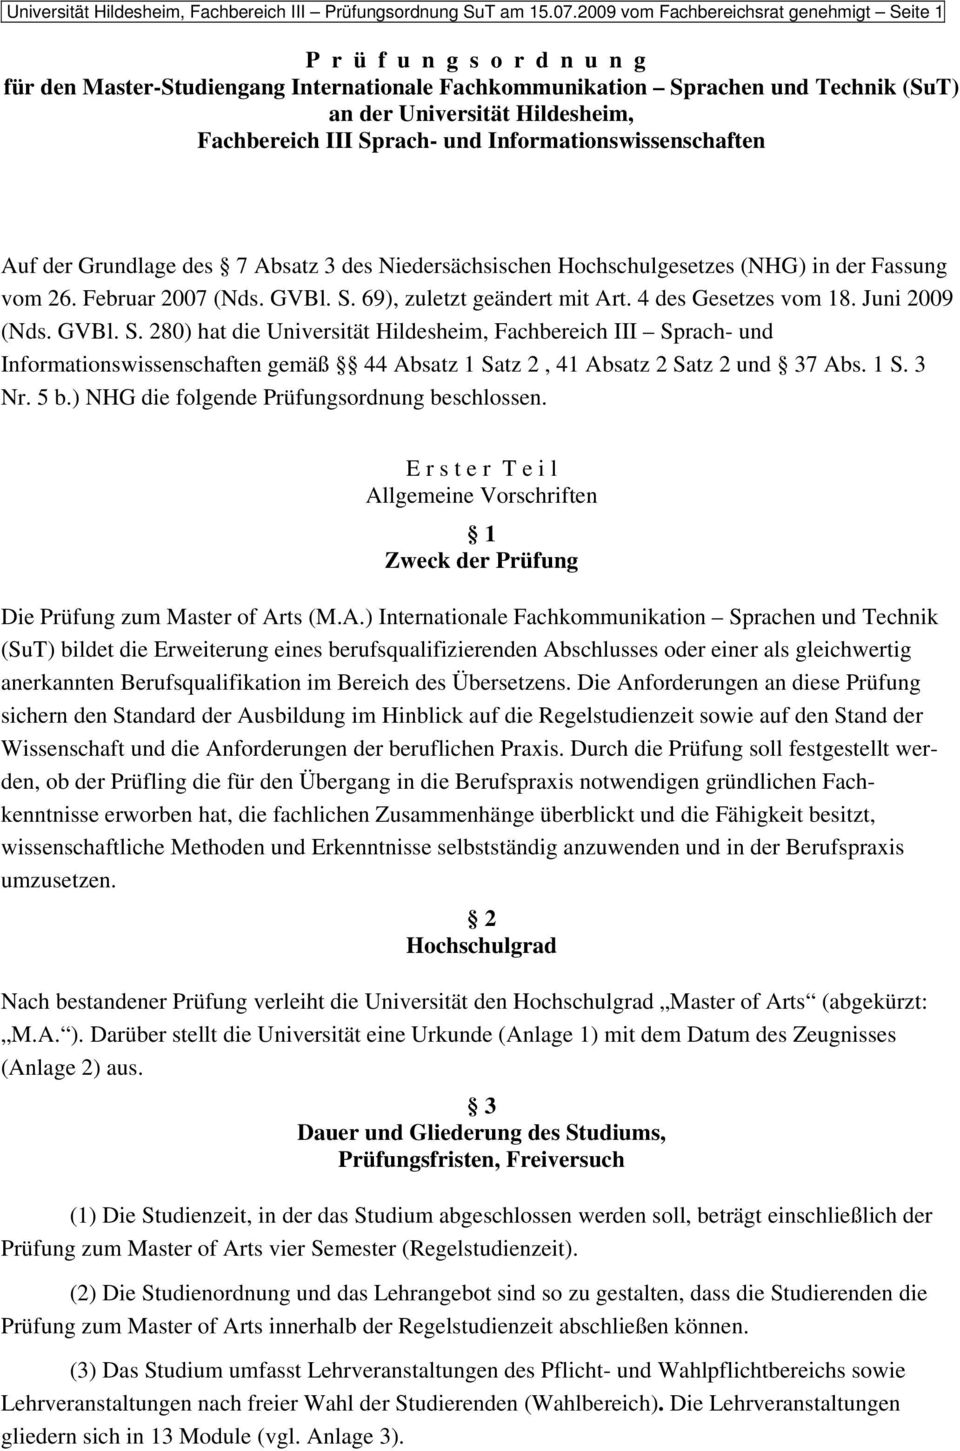 Fachbereich III Sprach- und Informationswissenschaften Auf der Grundlage des 7 Absatz 3 des Niedersächsischen Hochschulgesetzes (NHG) in der Fassung vom 26. Februar 2007 (Nds. GVBl. S. 69), zuletzt geändert mit Art.